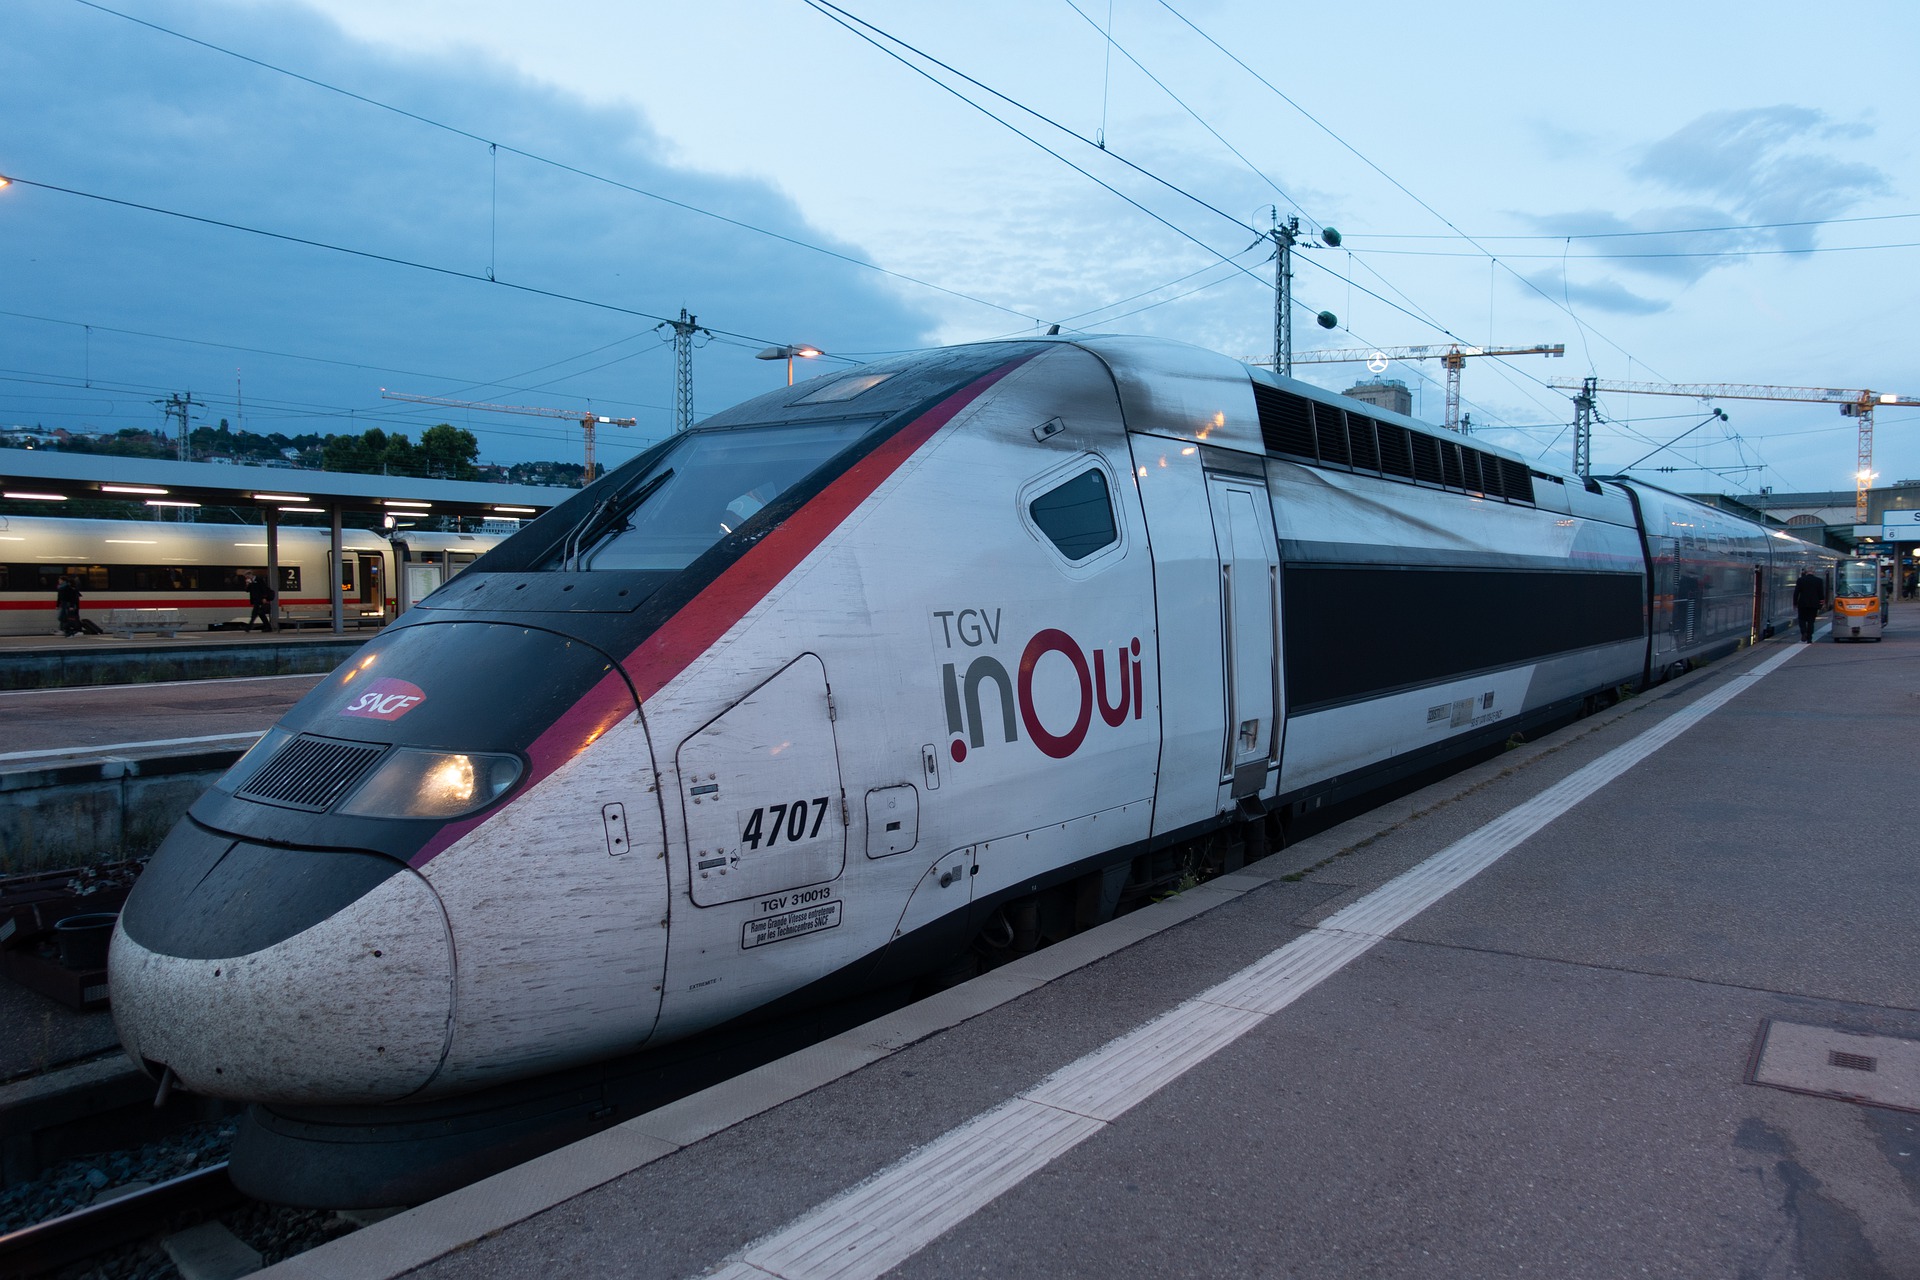 La SNCF commande 15 nouveaux TGV à Alstom